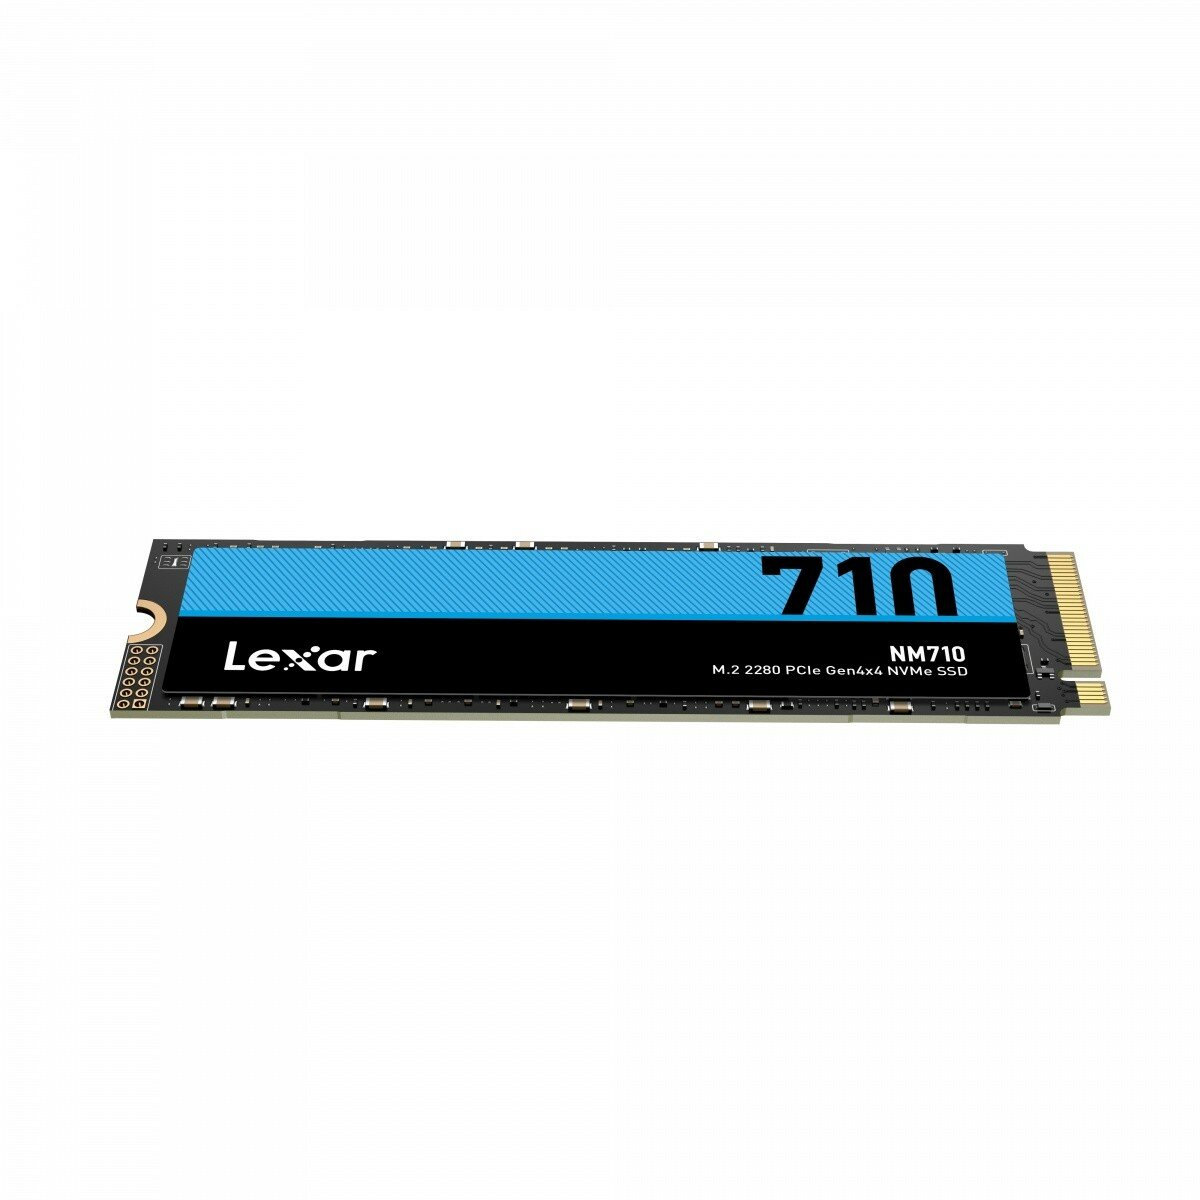 Dysk SSD Lexar NM710 1TB  M.2 PCIe NVMe widok od przodu pod skosem w poziomie